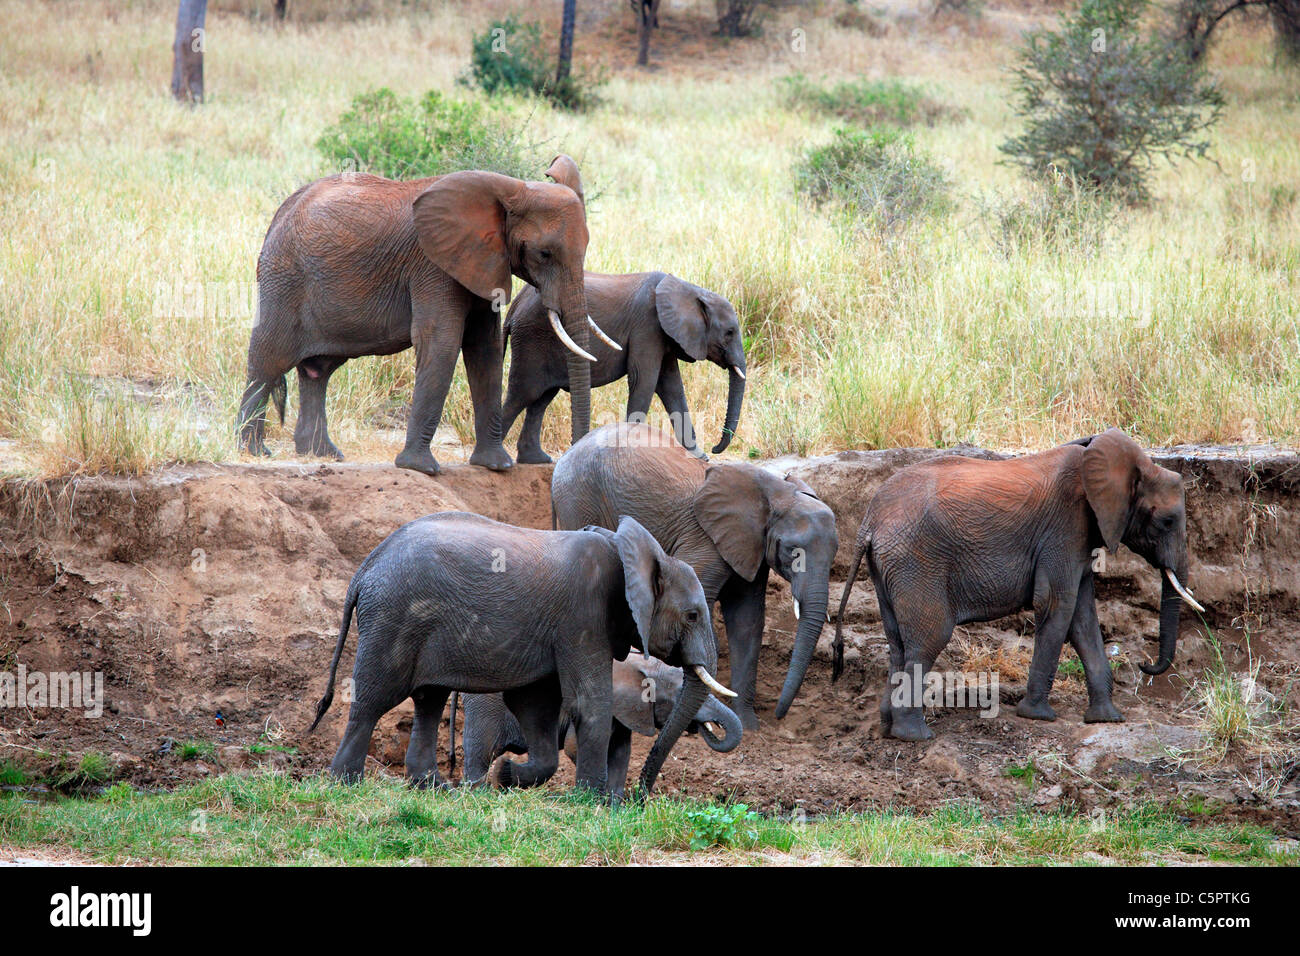 Loxodonta africana (Elephant), Tarangire National Park, Tanzania Stock Photo